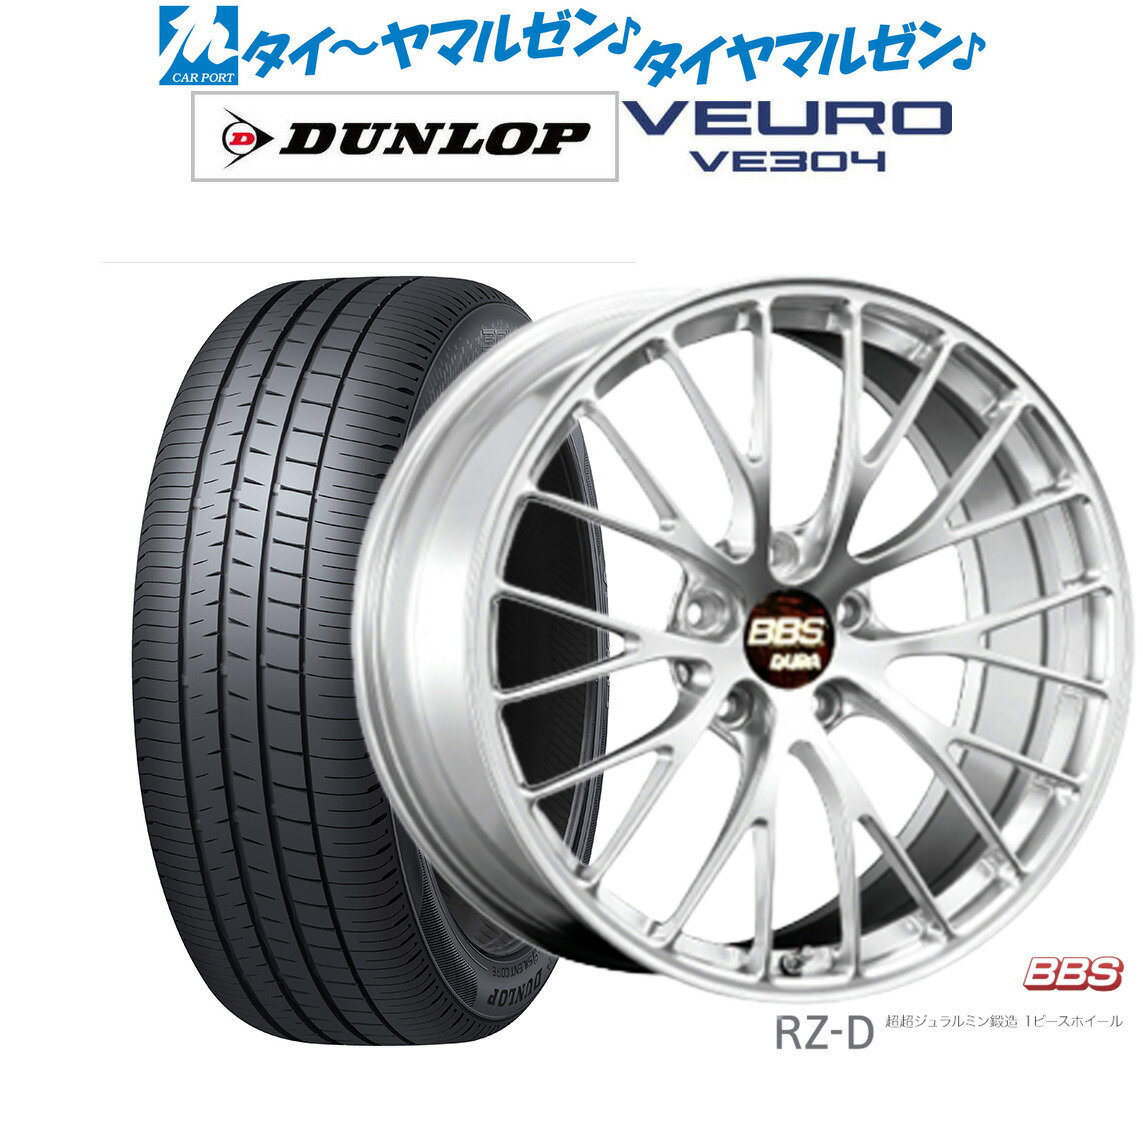 [5/20]割引クーポン配布新品 サマータイヤ ホイール4本セットBBS JAPAN RZ-D19インチ 8.5Jダンロップ VEURO ビューロ VE304245/40R19